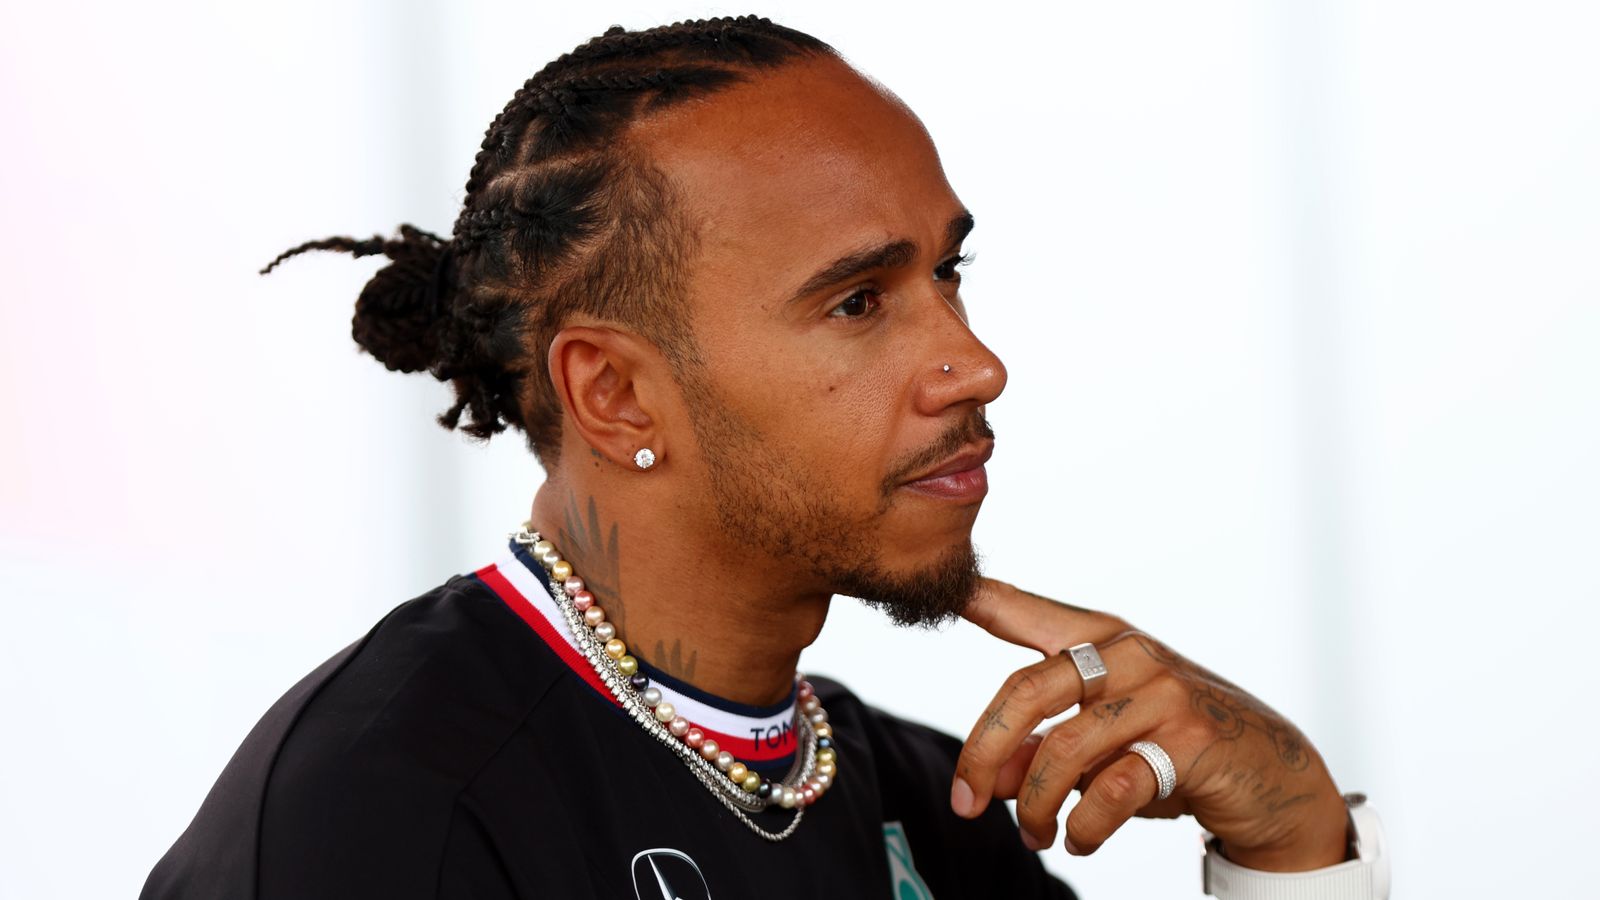 Dernier contrat de Lewis Hamilton: le pilote Mercedes affirme que des progrès ont été réalisés avec Toto Wolff sur l’avenir de la F1